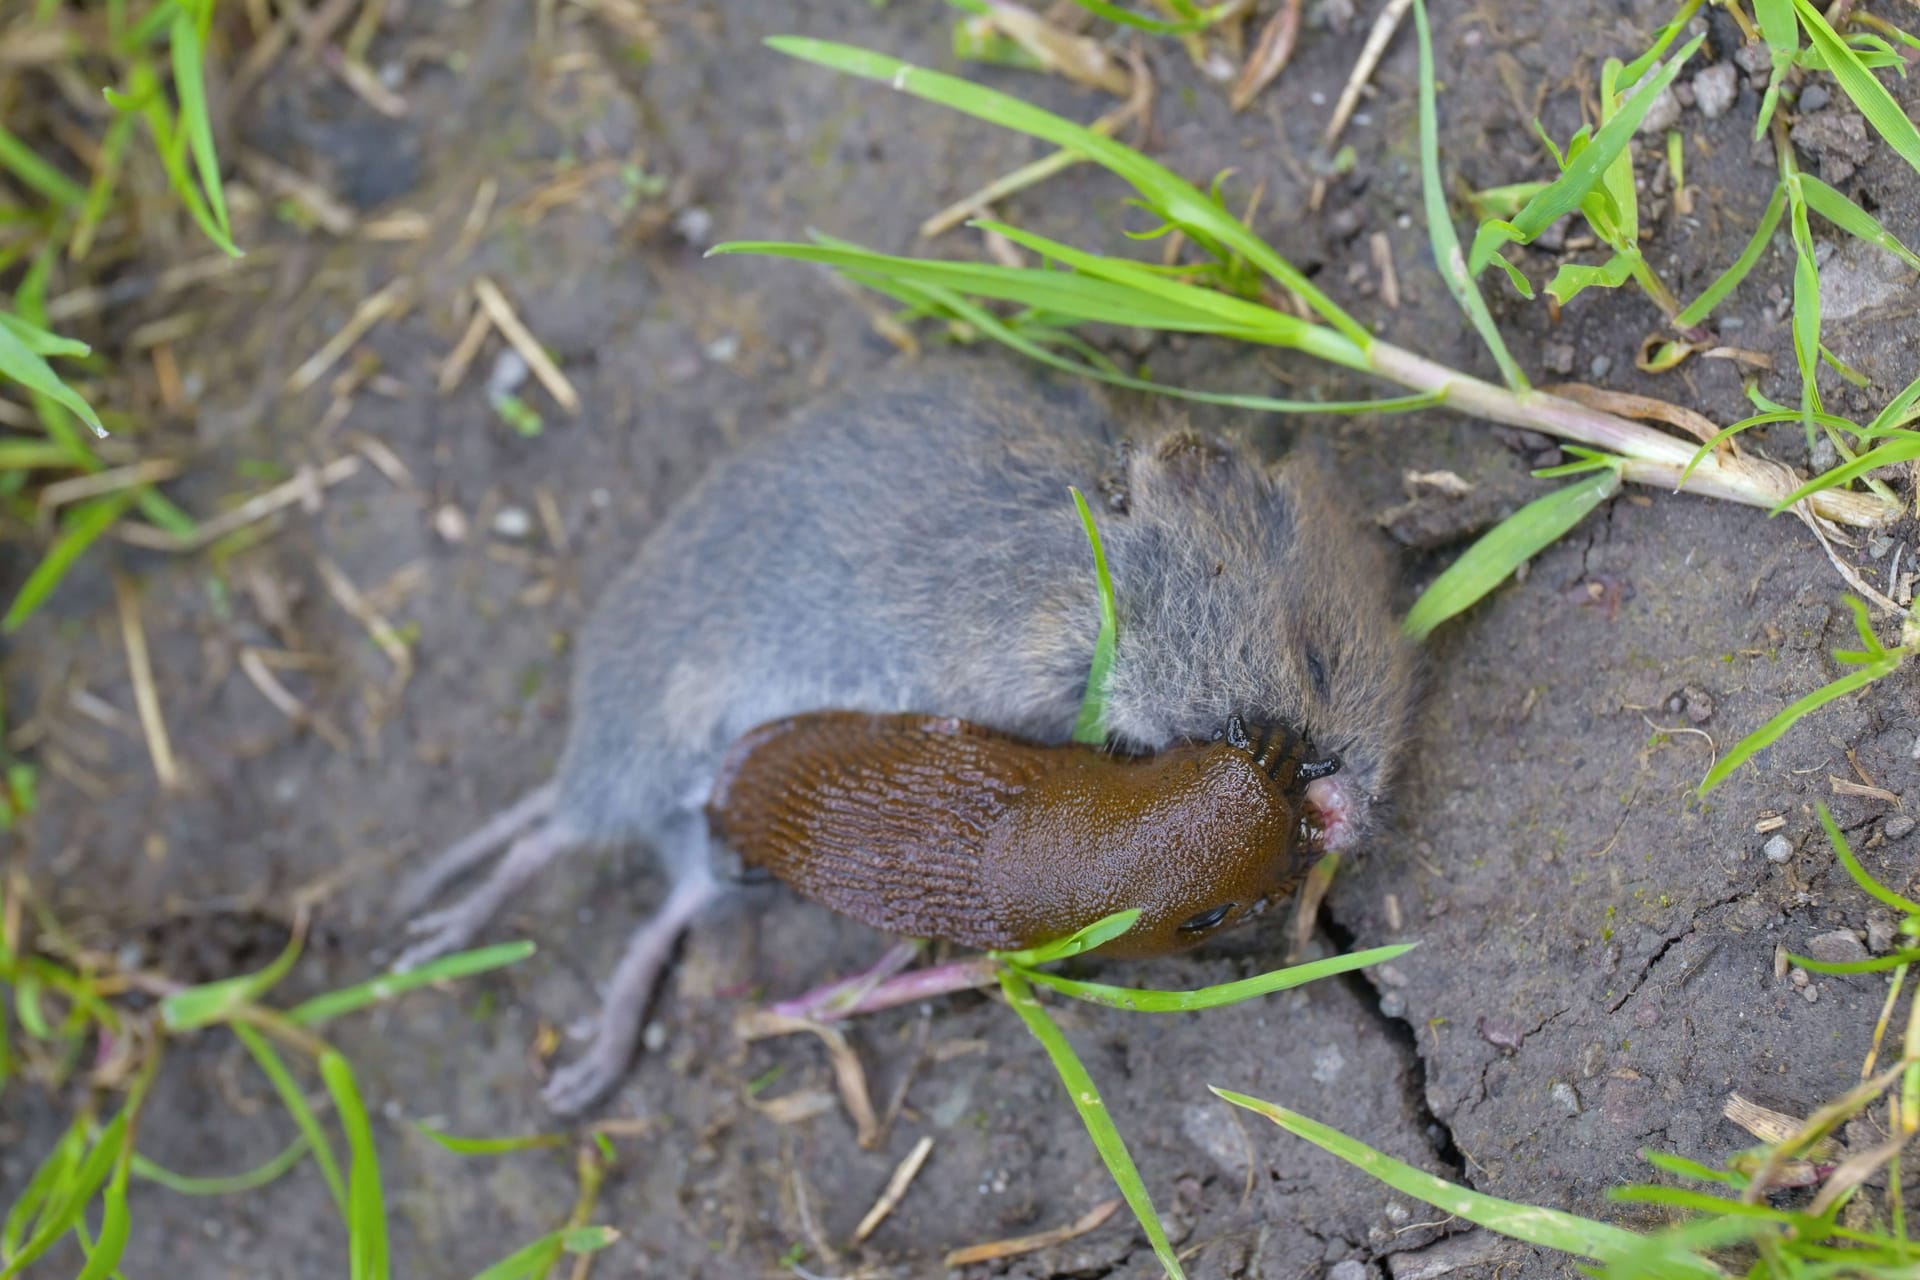 Nacktschnecke frisst an toter Maus.